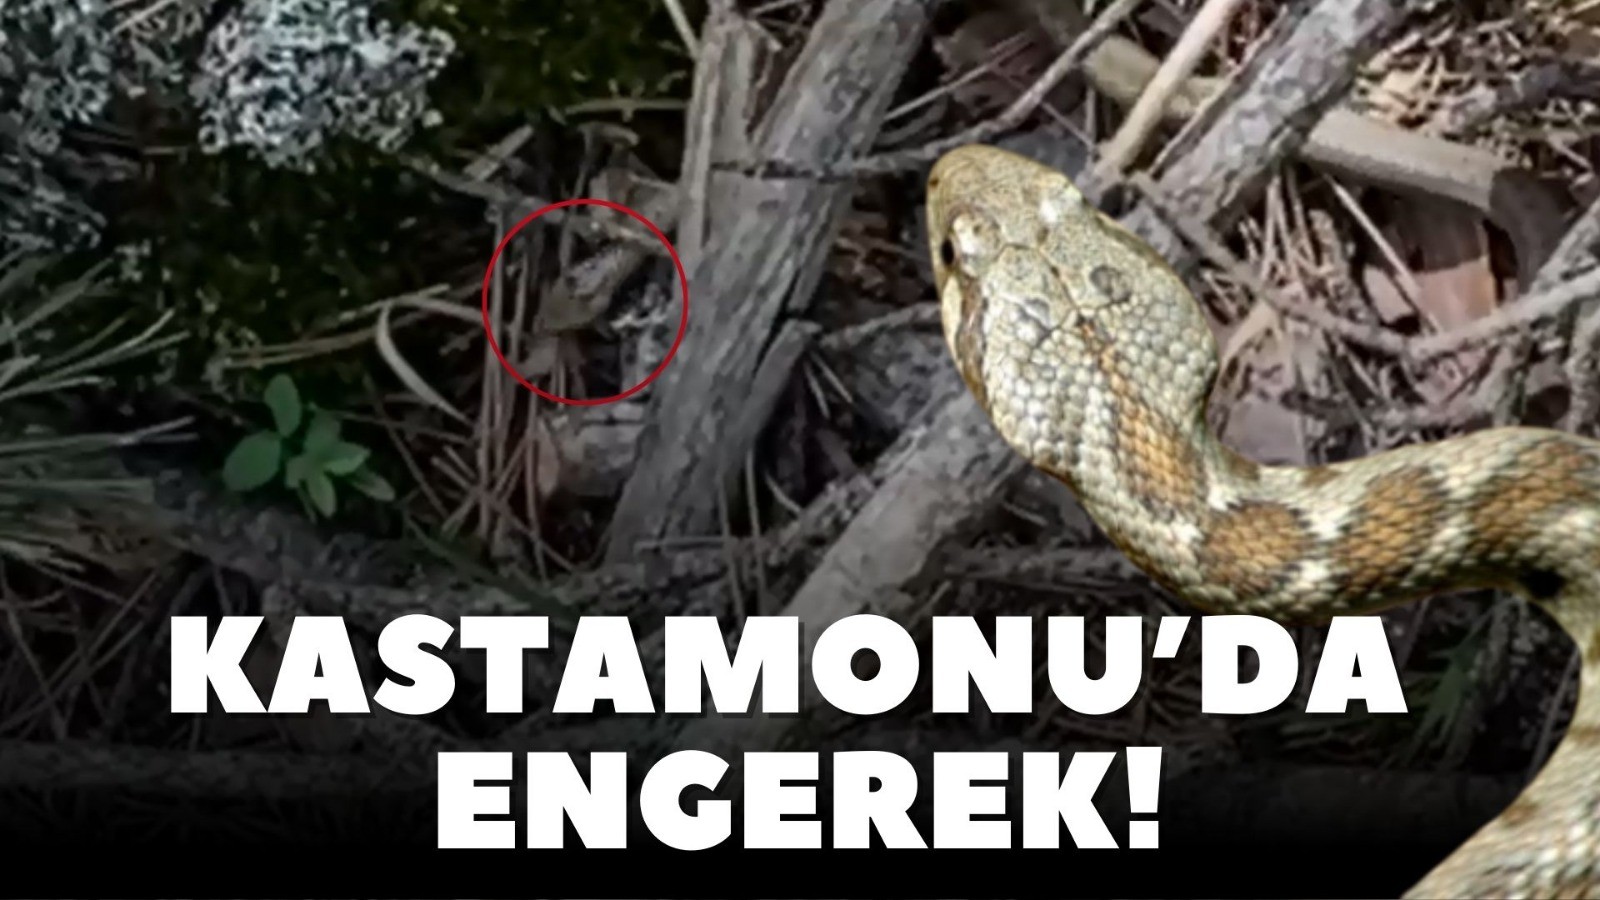 Kastamonu'da engerek yılanı! Üçgen başlı;